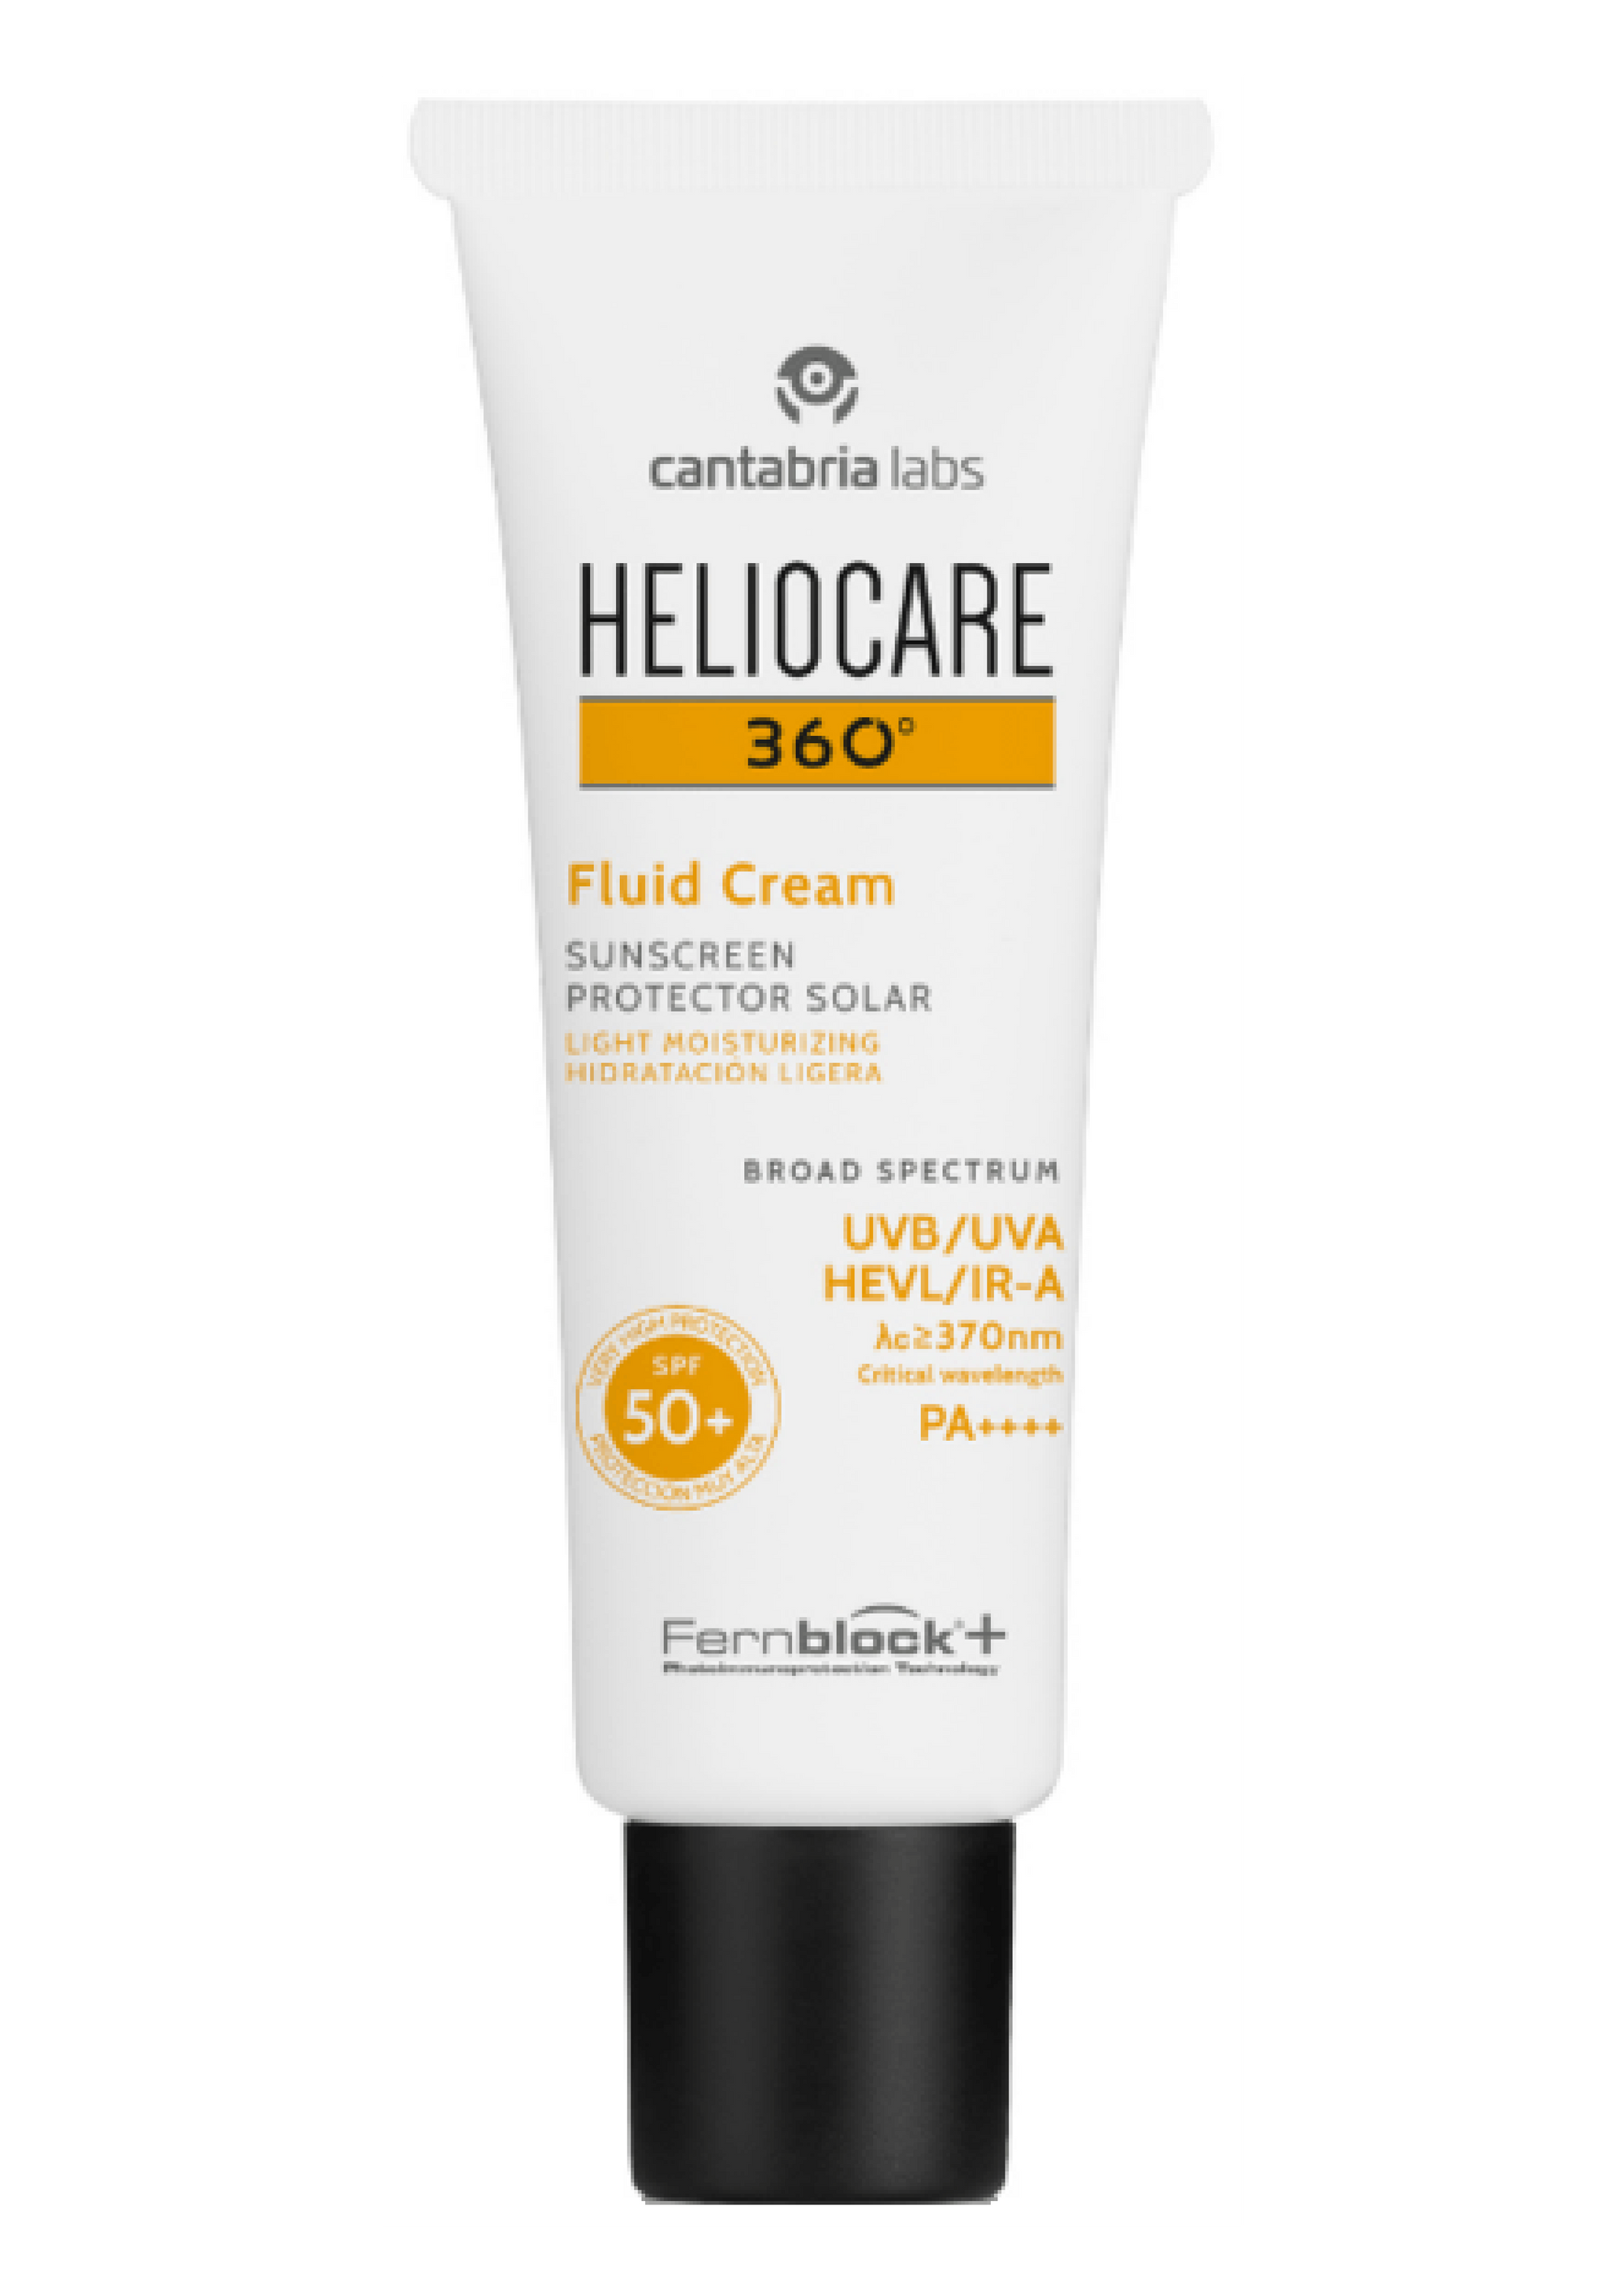 Heliocare® 360° Fluid Cream SPF 50+